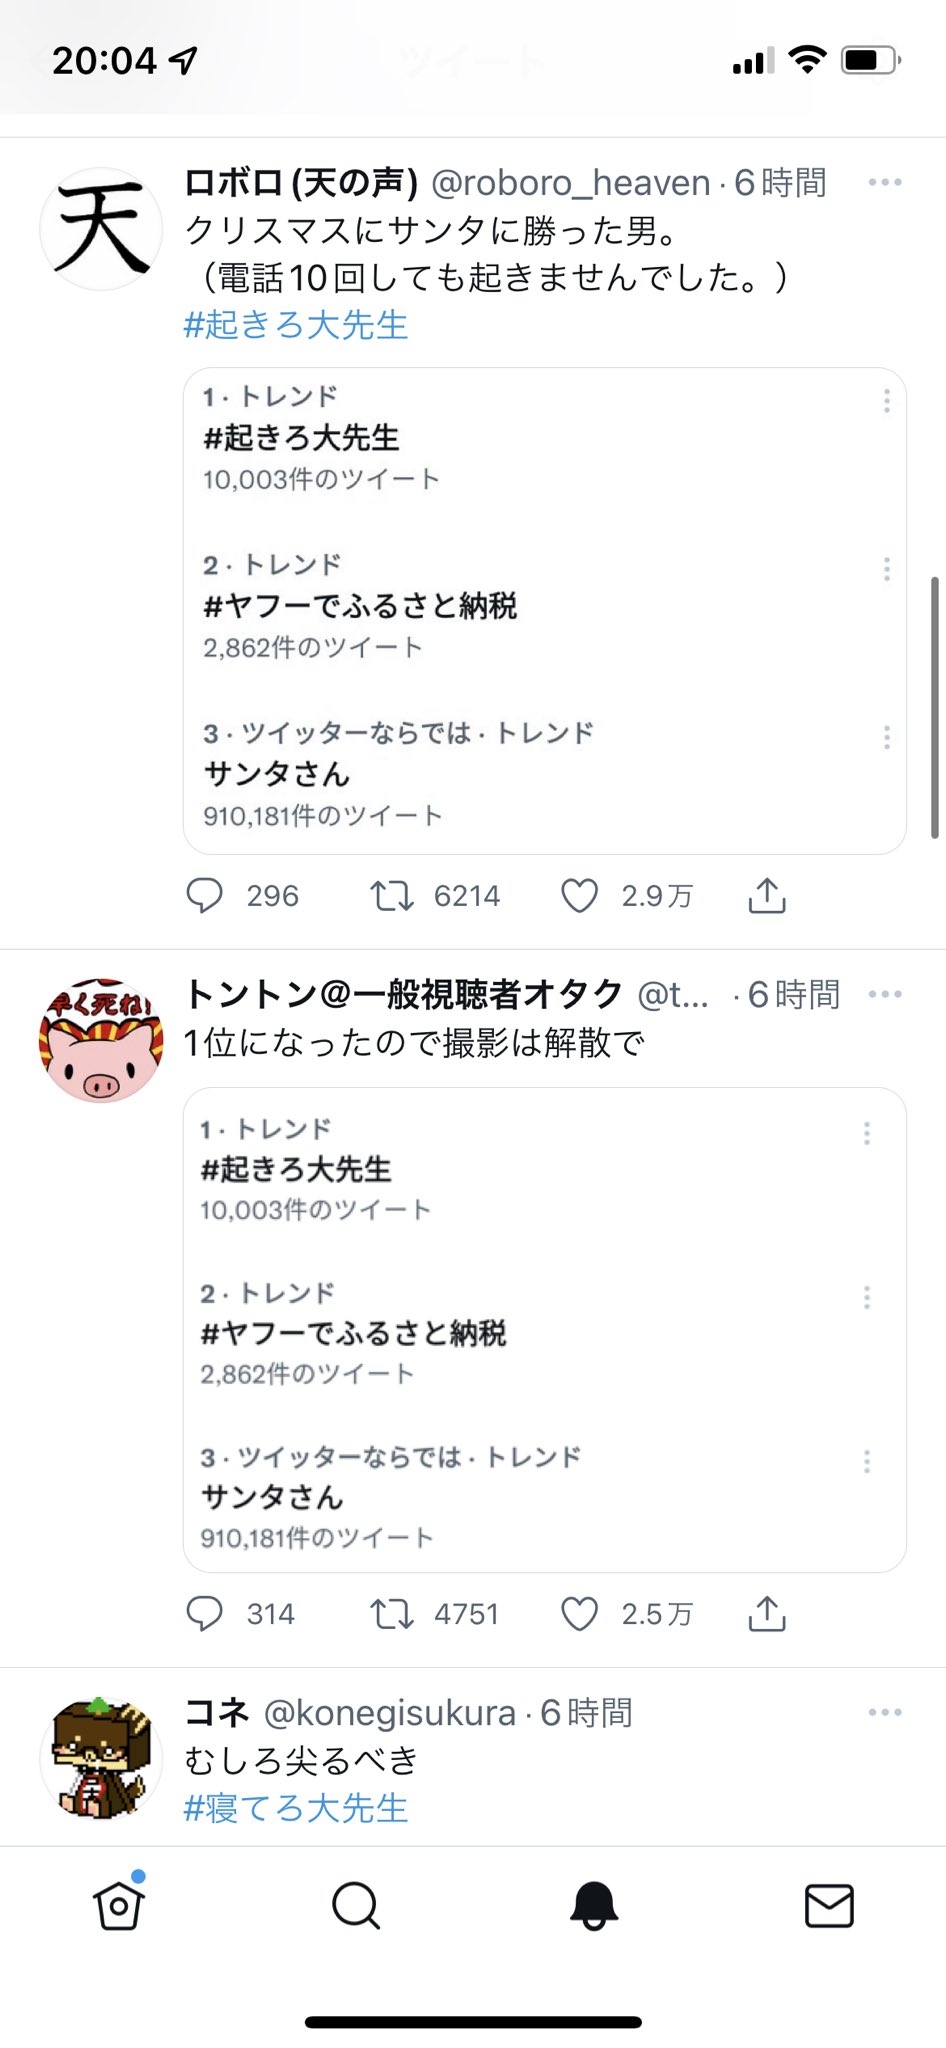 尖れ大先生 Twitter Search Twitter